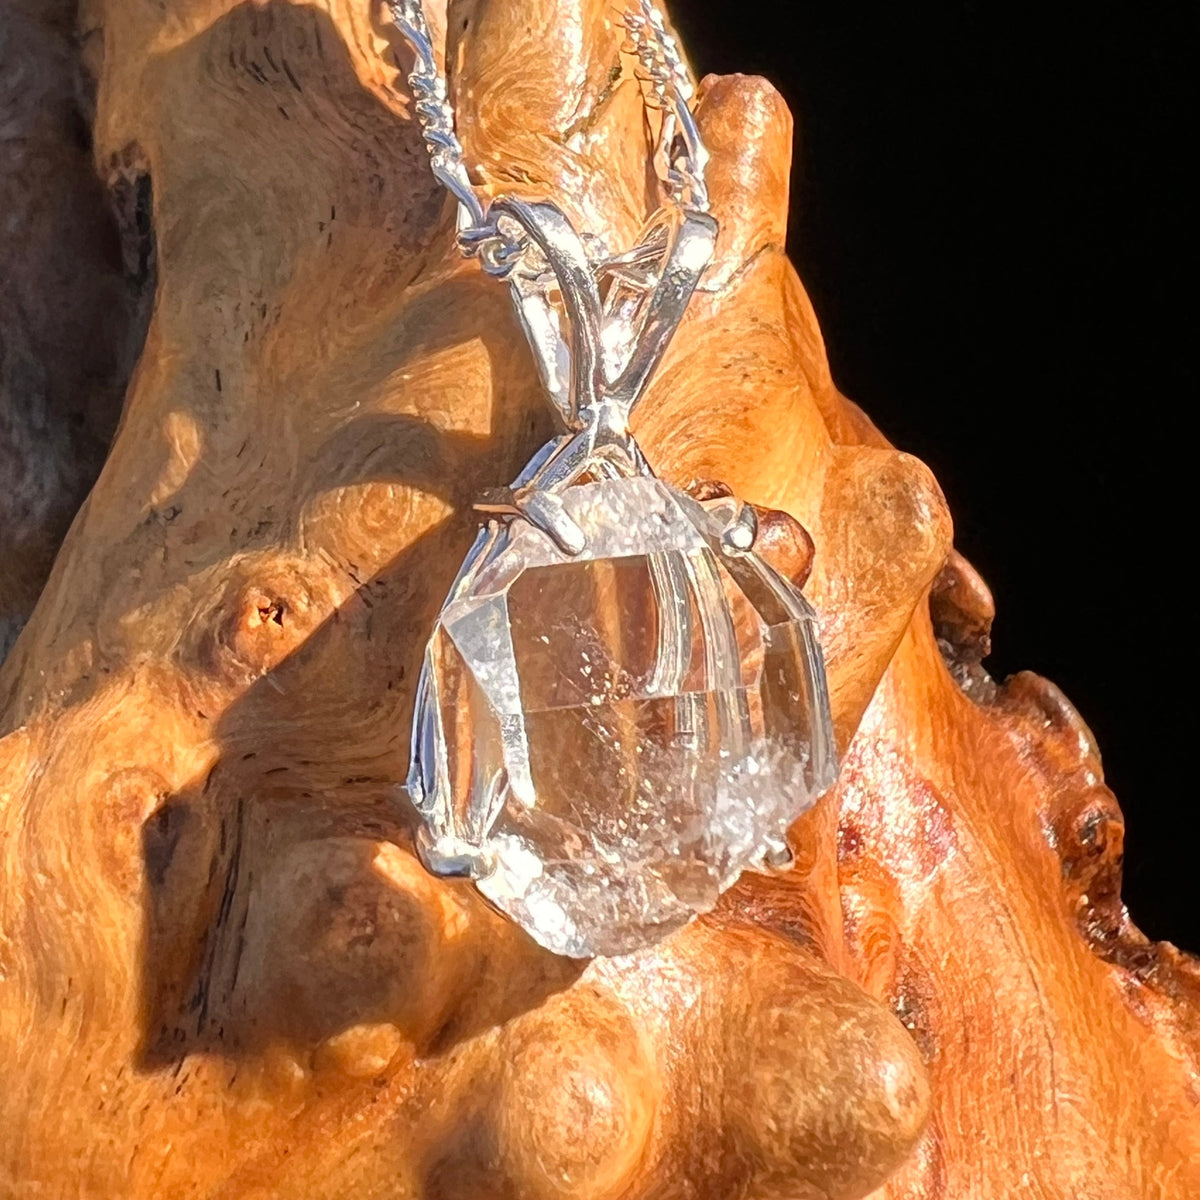 Herkimer Diamond Pendant Sterling Silver #6069-Moldavite Life